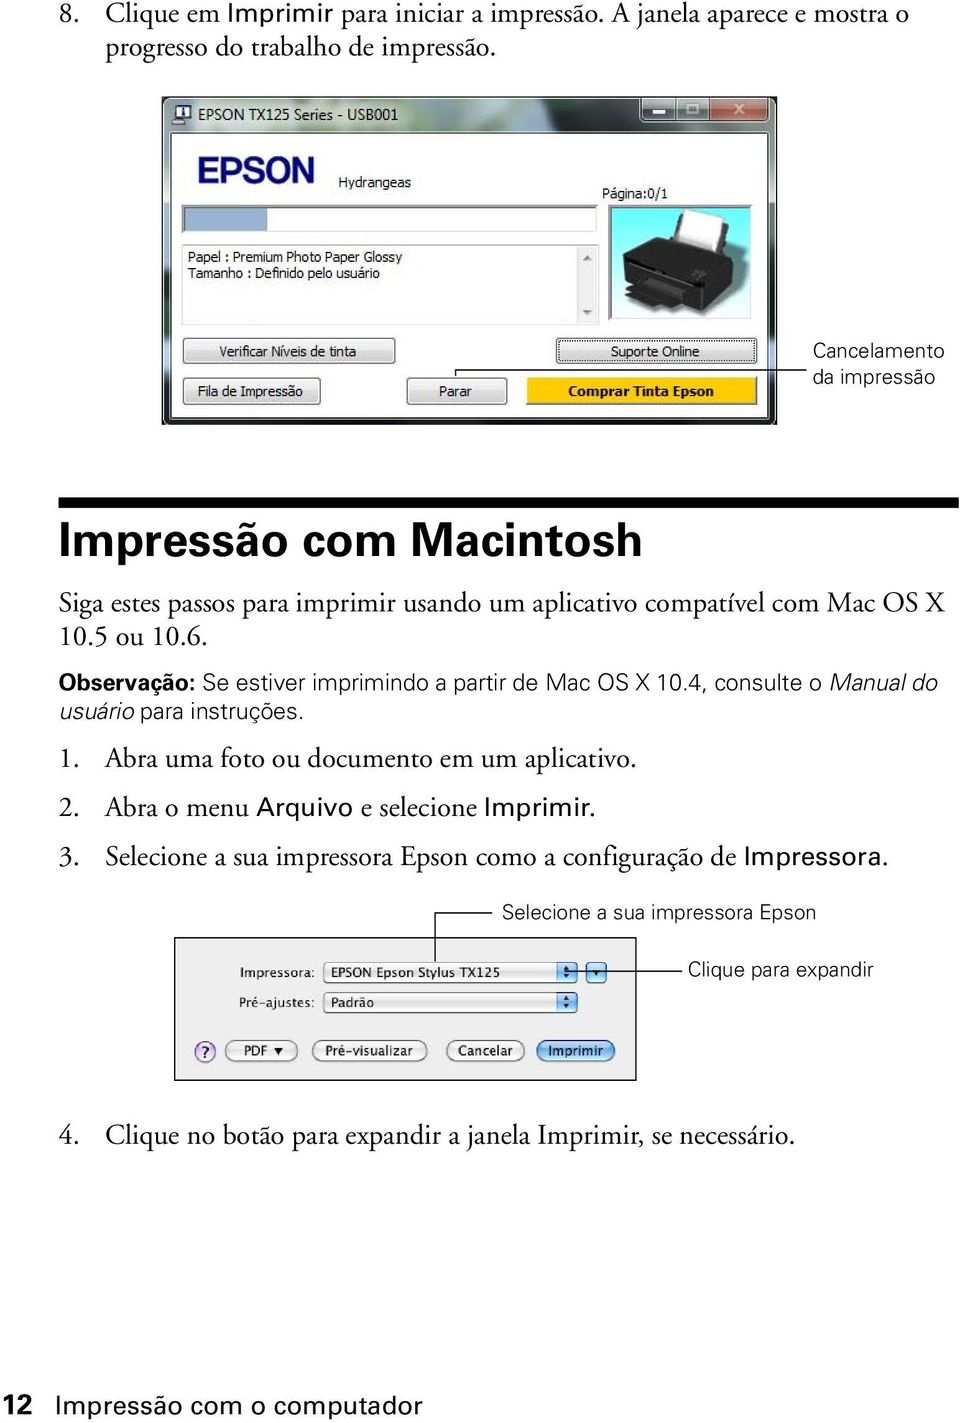 Observação: Se estiver imprimindo a partir de Mac OS X 10.4, consulte o Manual do usuário para instruções. 1. Abra uma foto ou documento em um aplicativo. 2.